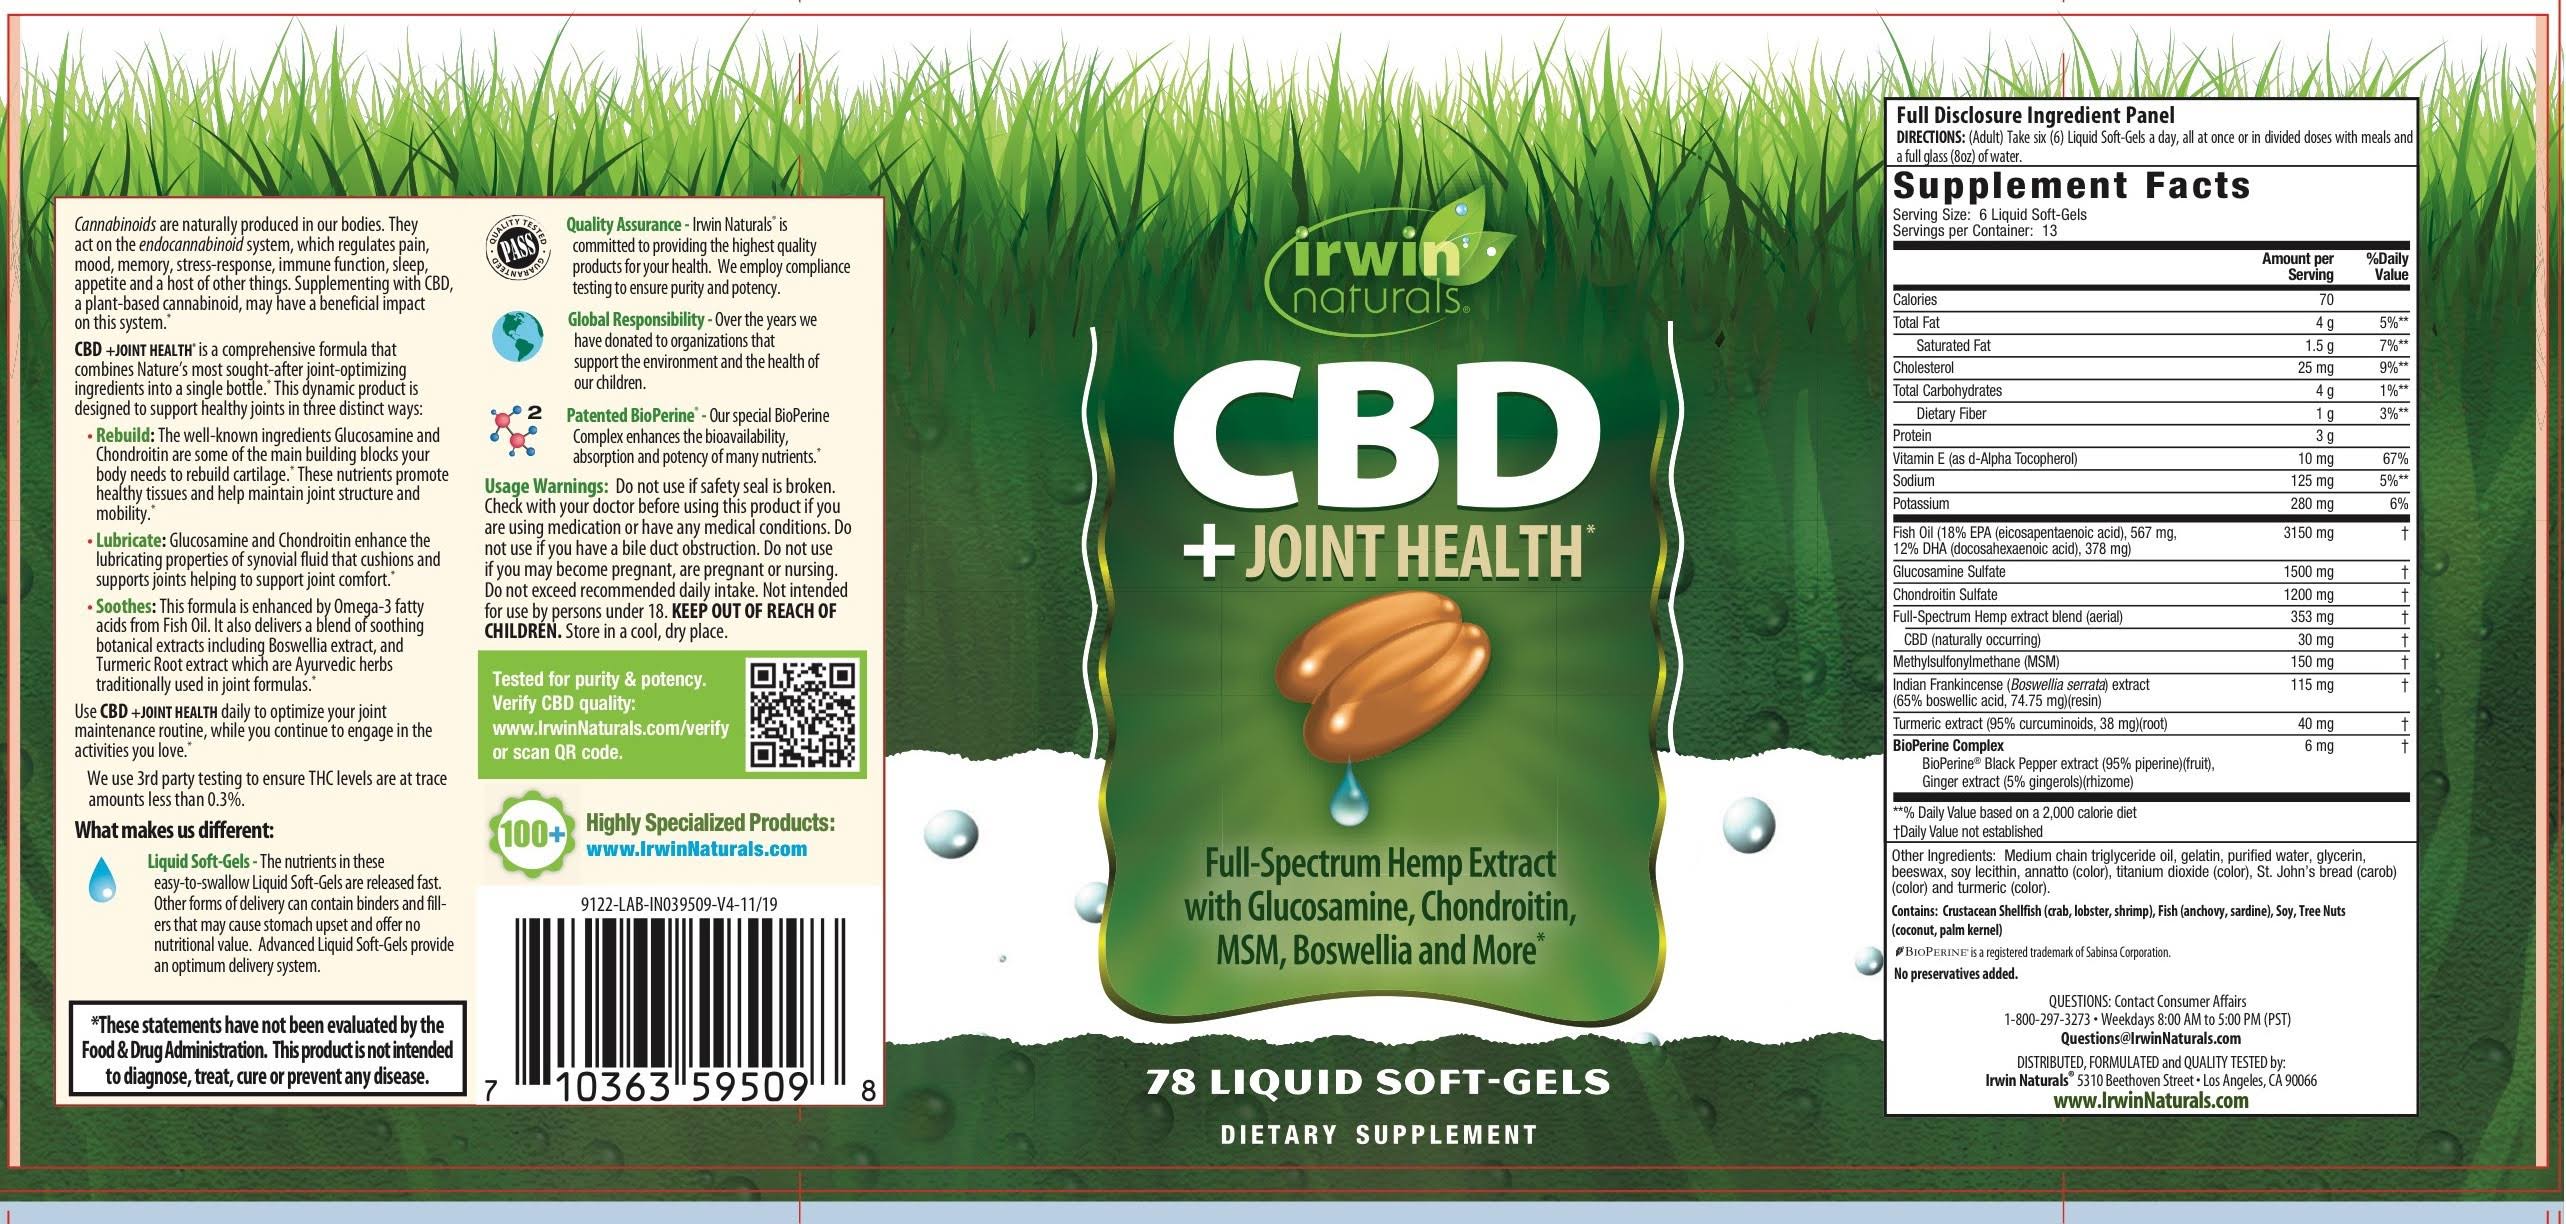 Irwin Naturals CBD + Joint Health, Liquid Soft-Gels - 78 softgels